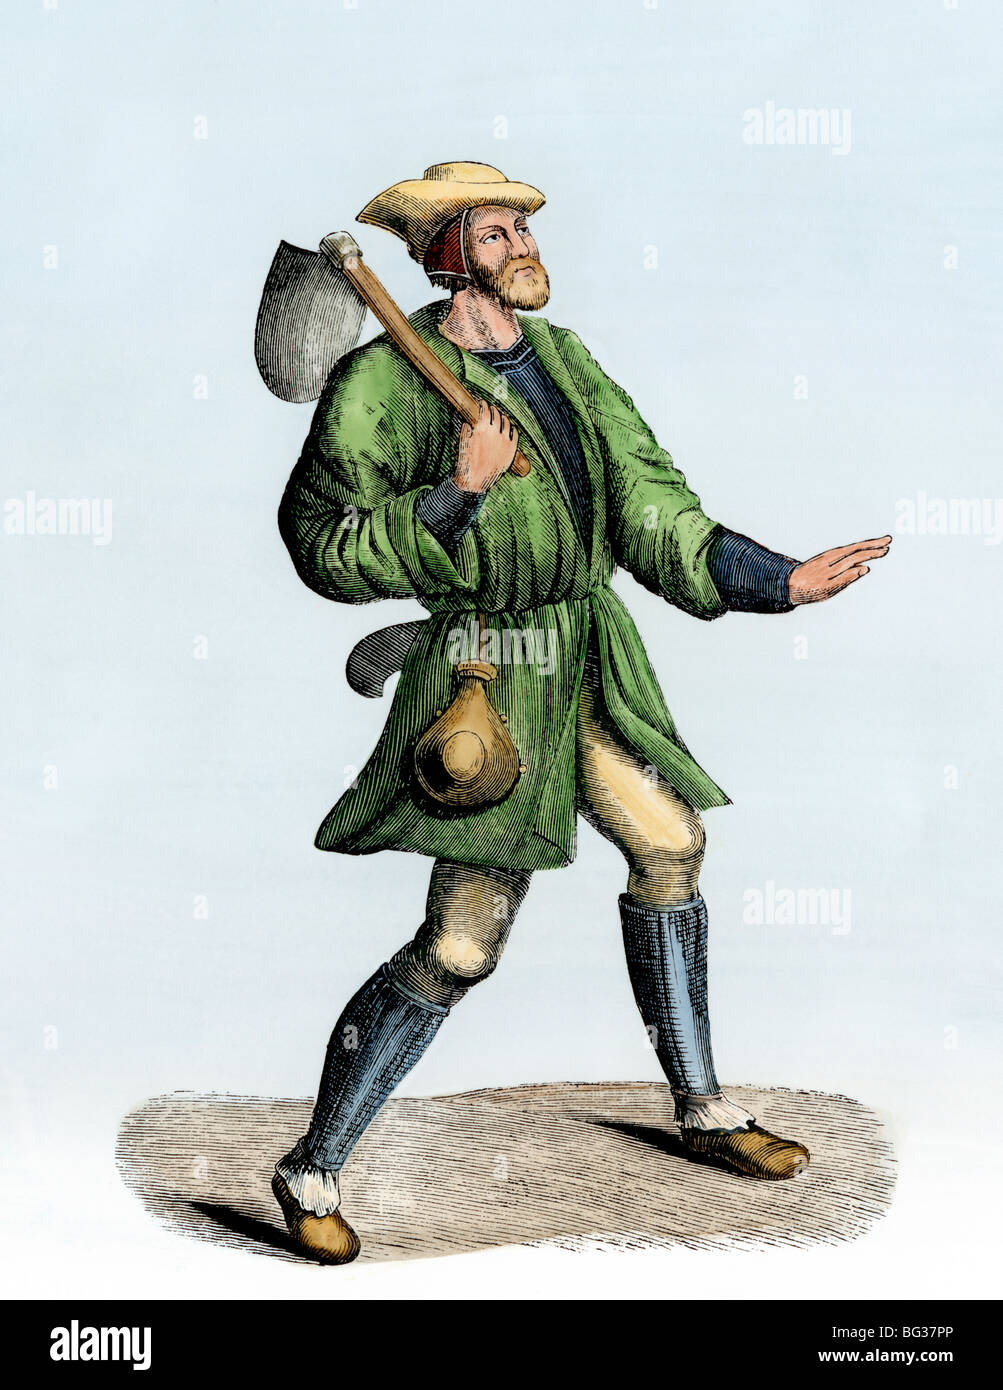 Campesino llevando una pala en el 1400s. Xilografía coloreada a mano Foto de stock